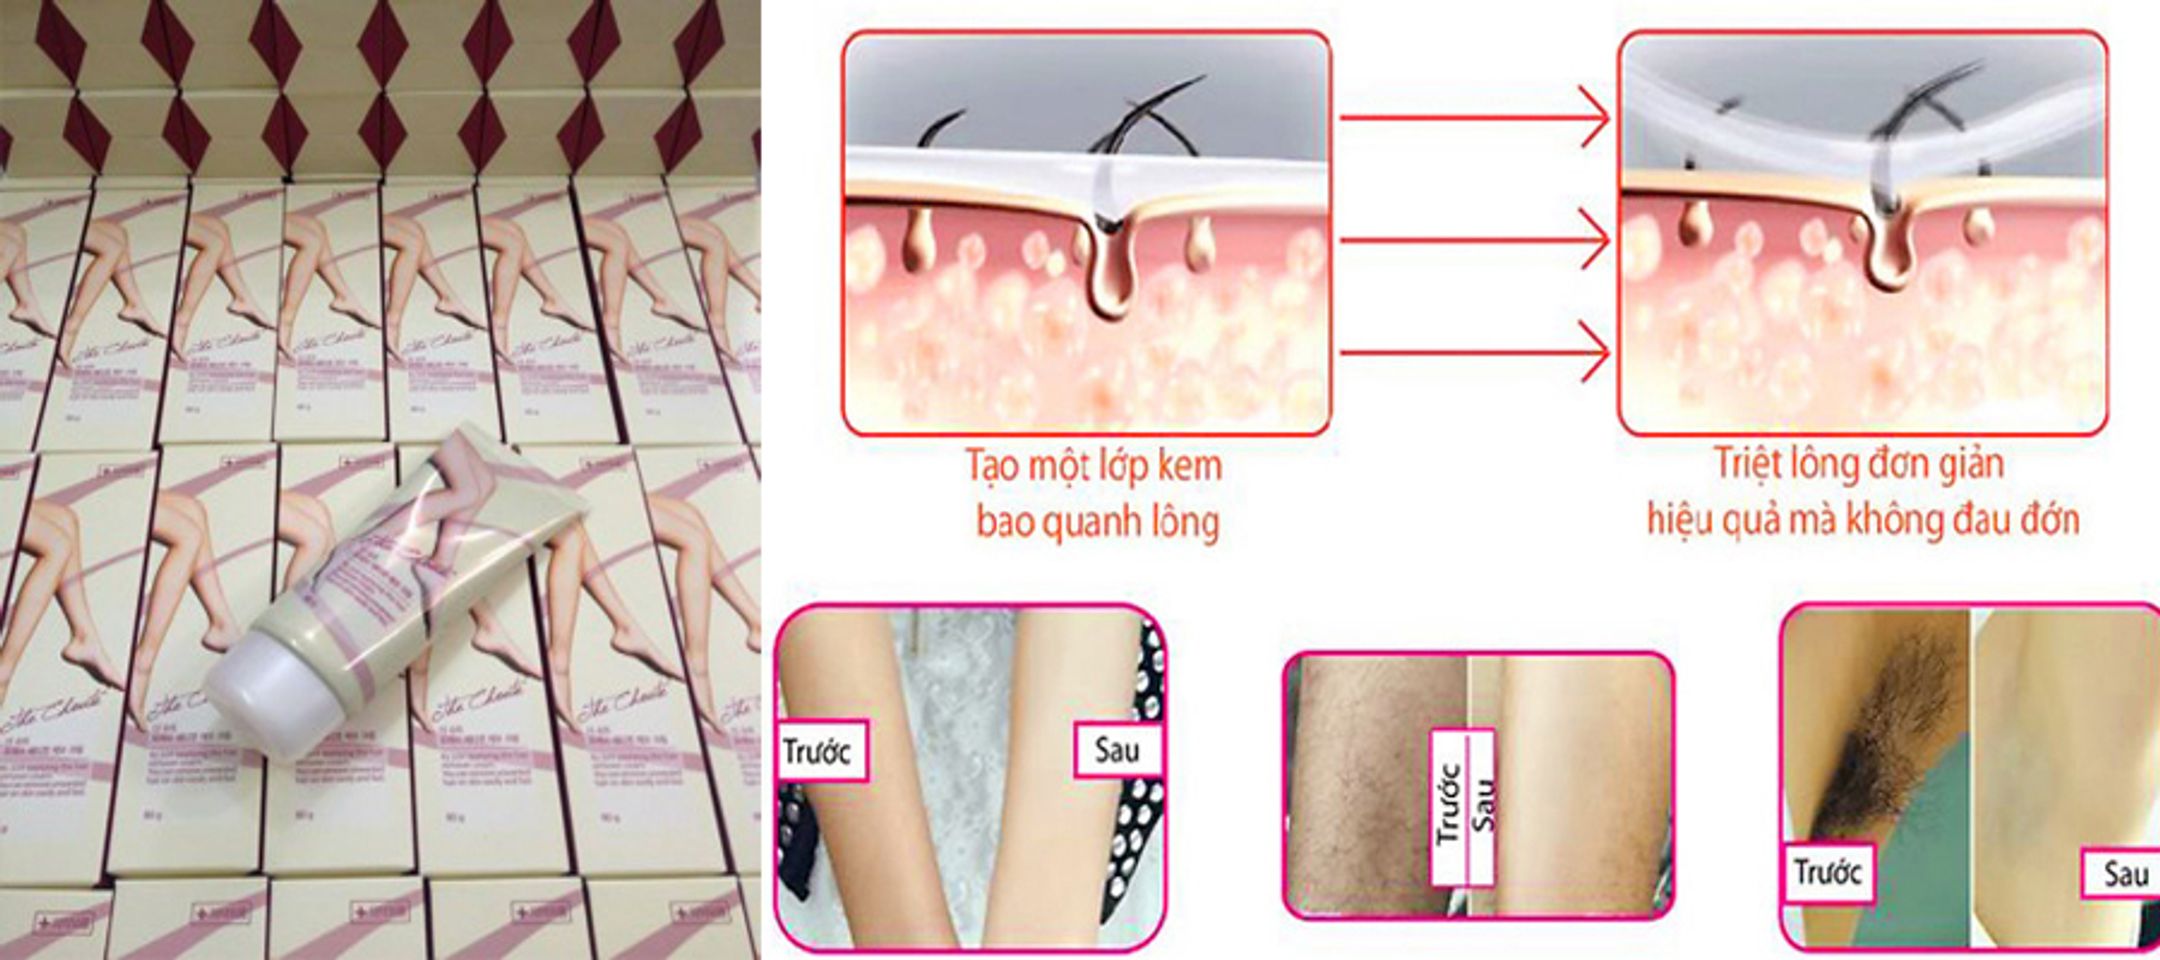 Kem tẩy lông iCharming The choute Hàn Quốc giúp tẩy sạch lông mà không gây tổn thương da